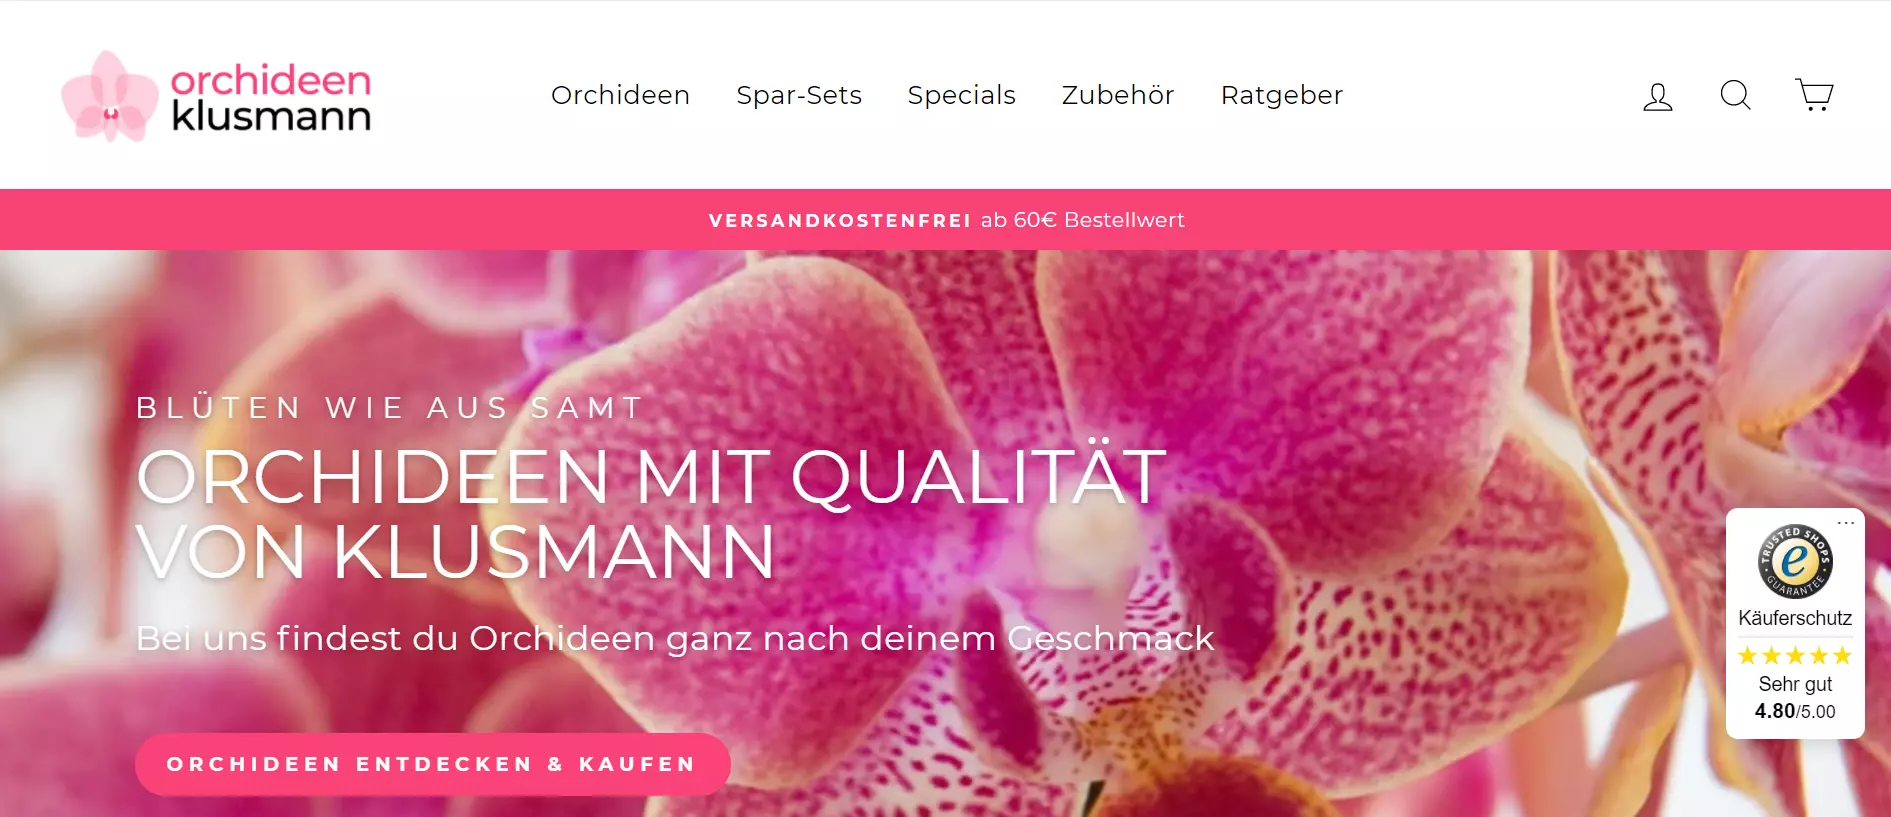 Orchideen Klusmann online